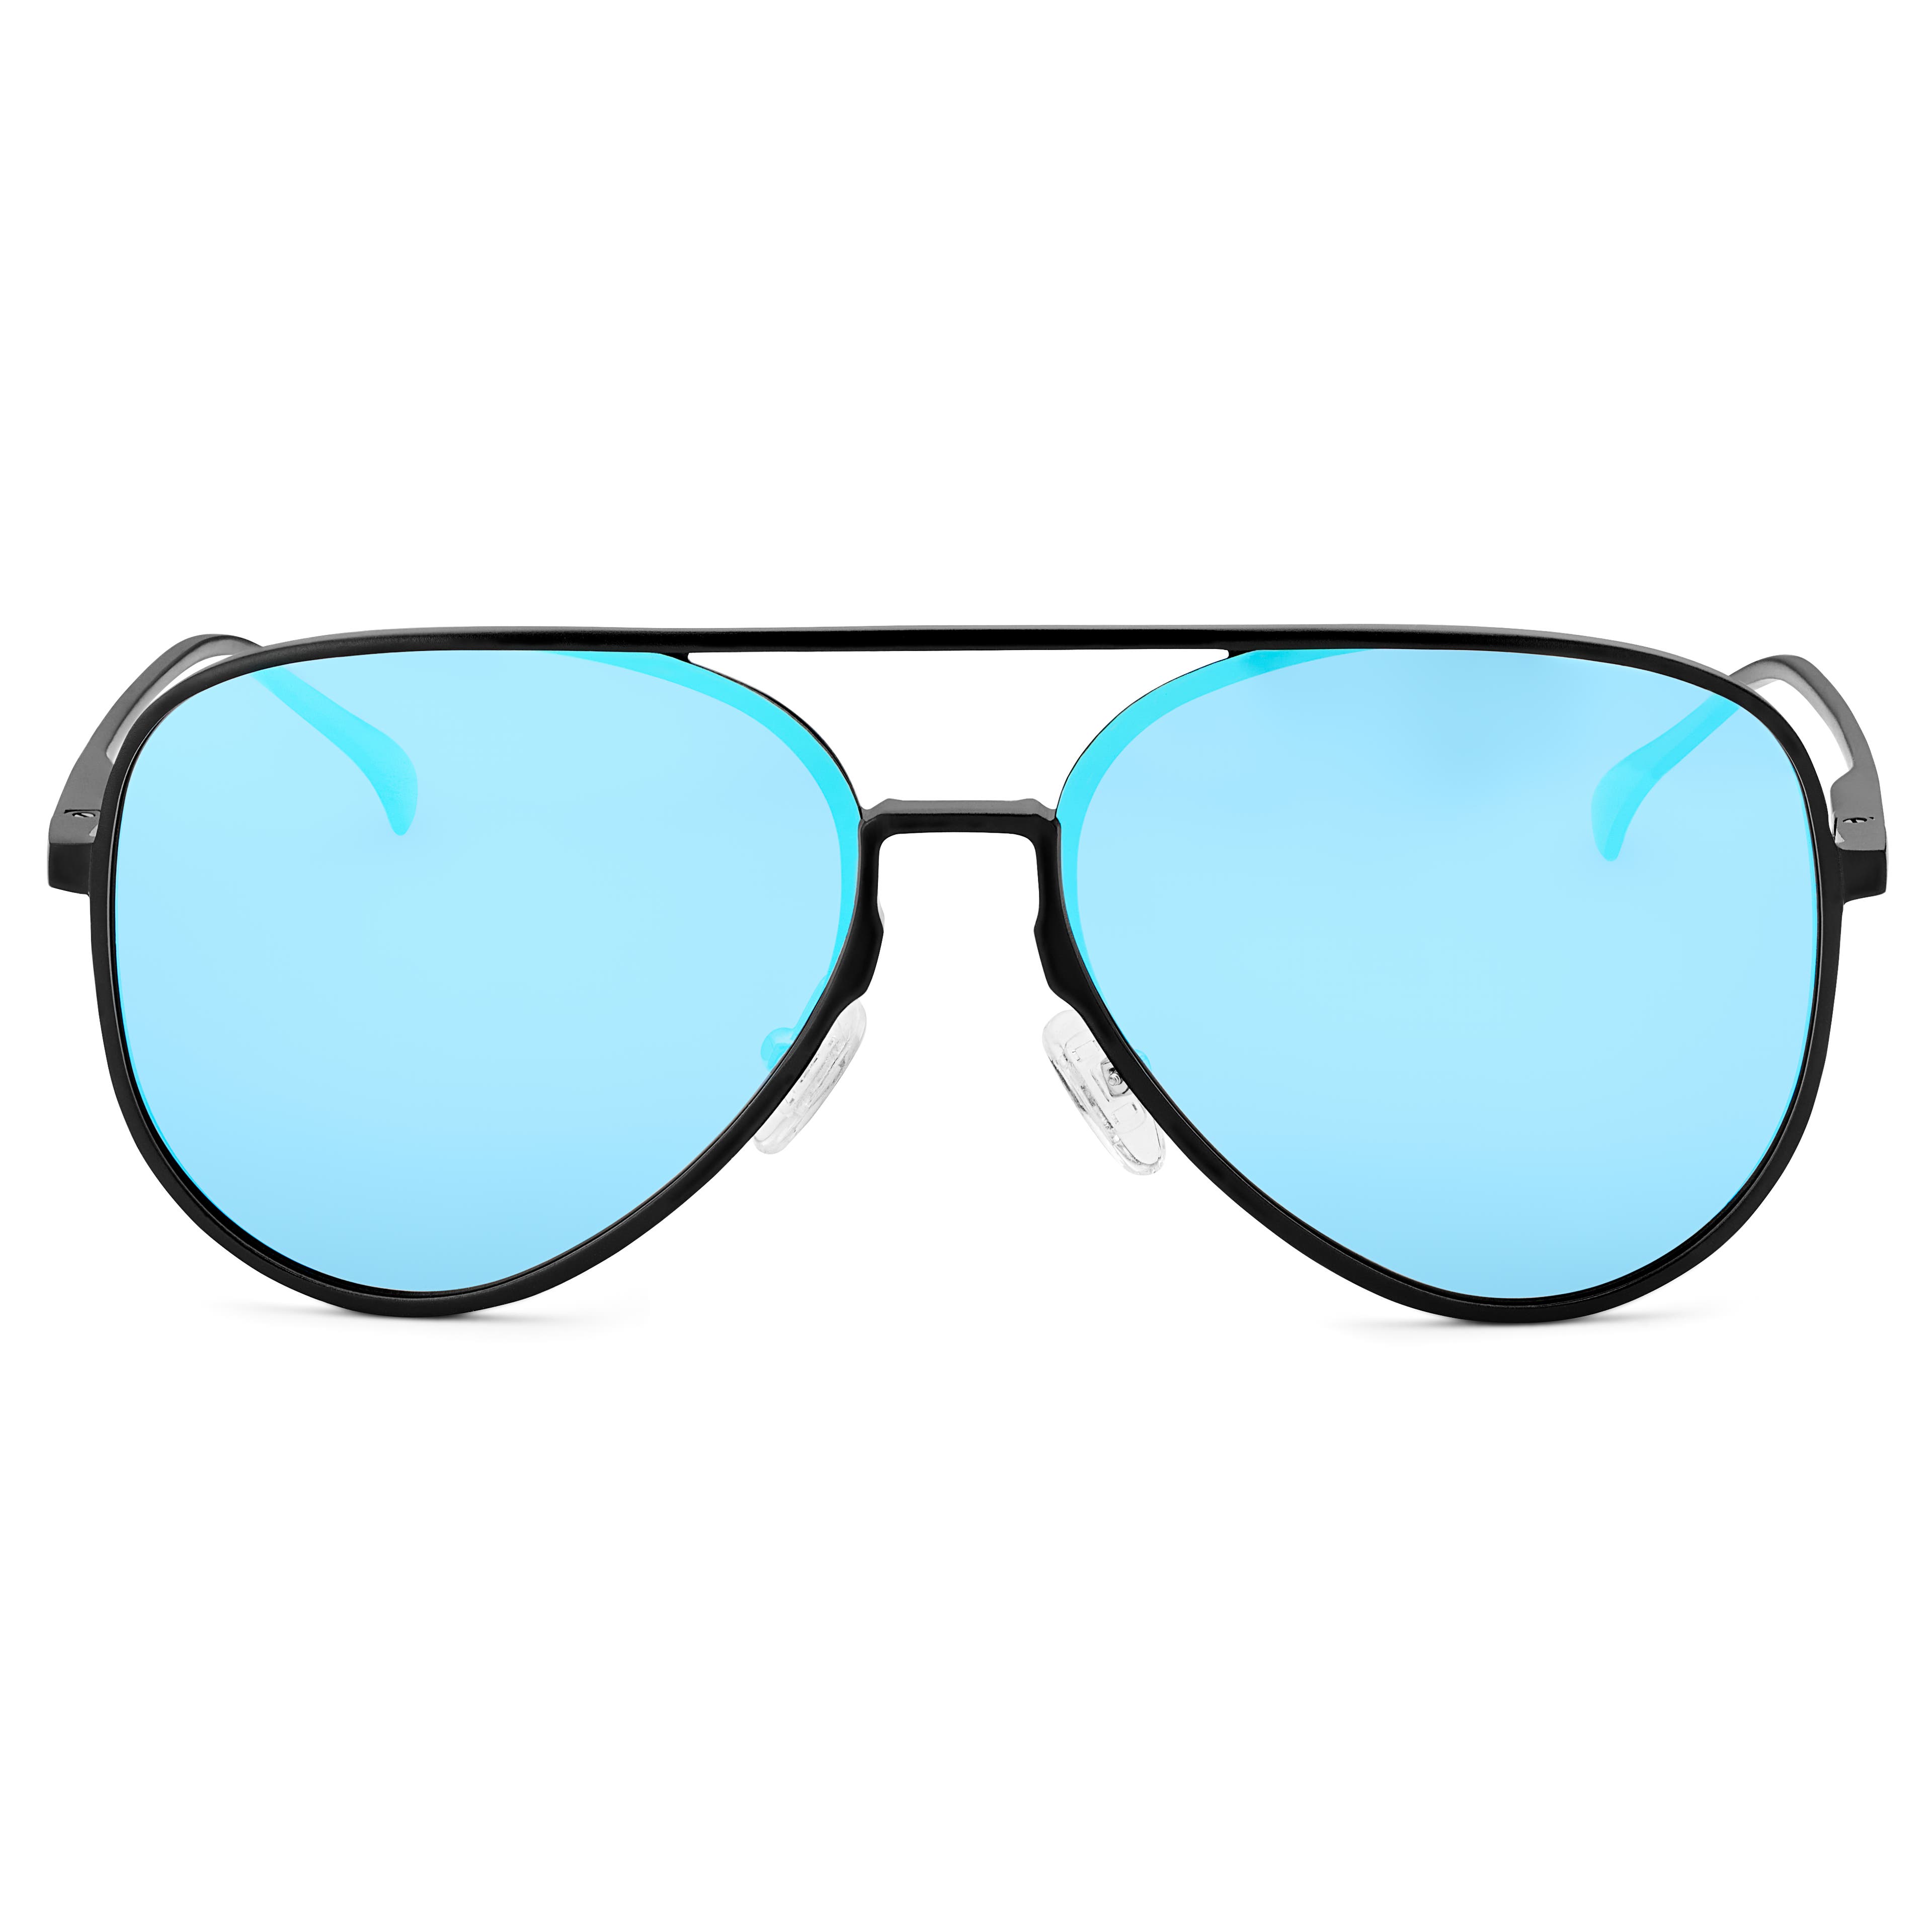 Schwarz-blaue, verspiegelte, polarisierte Pilotenbrille